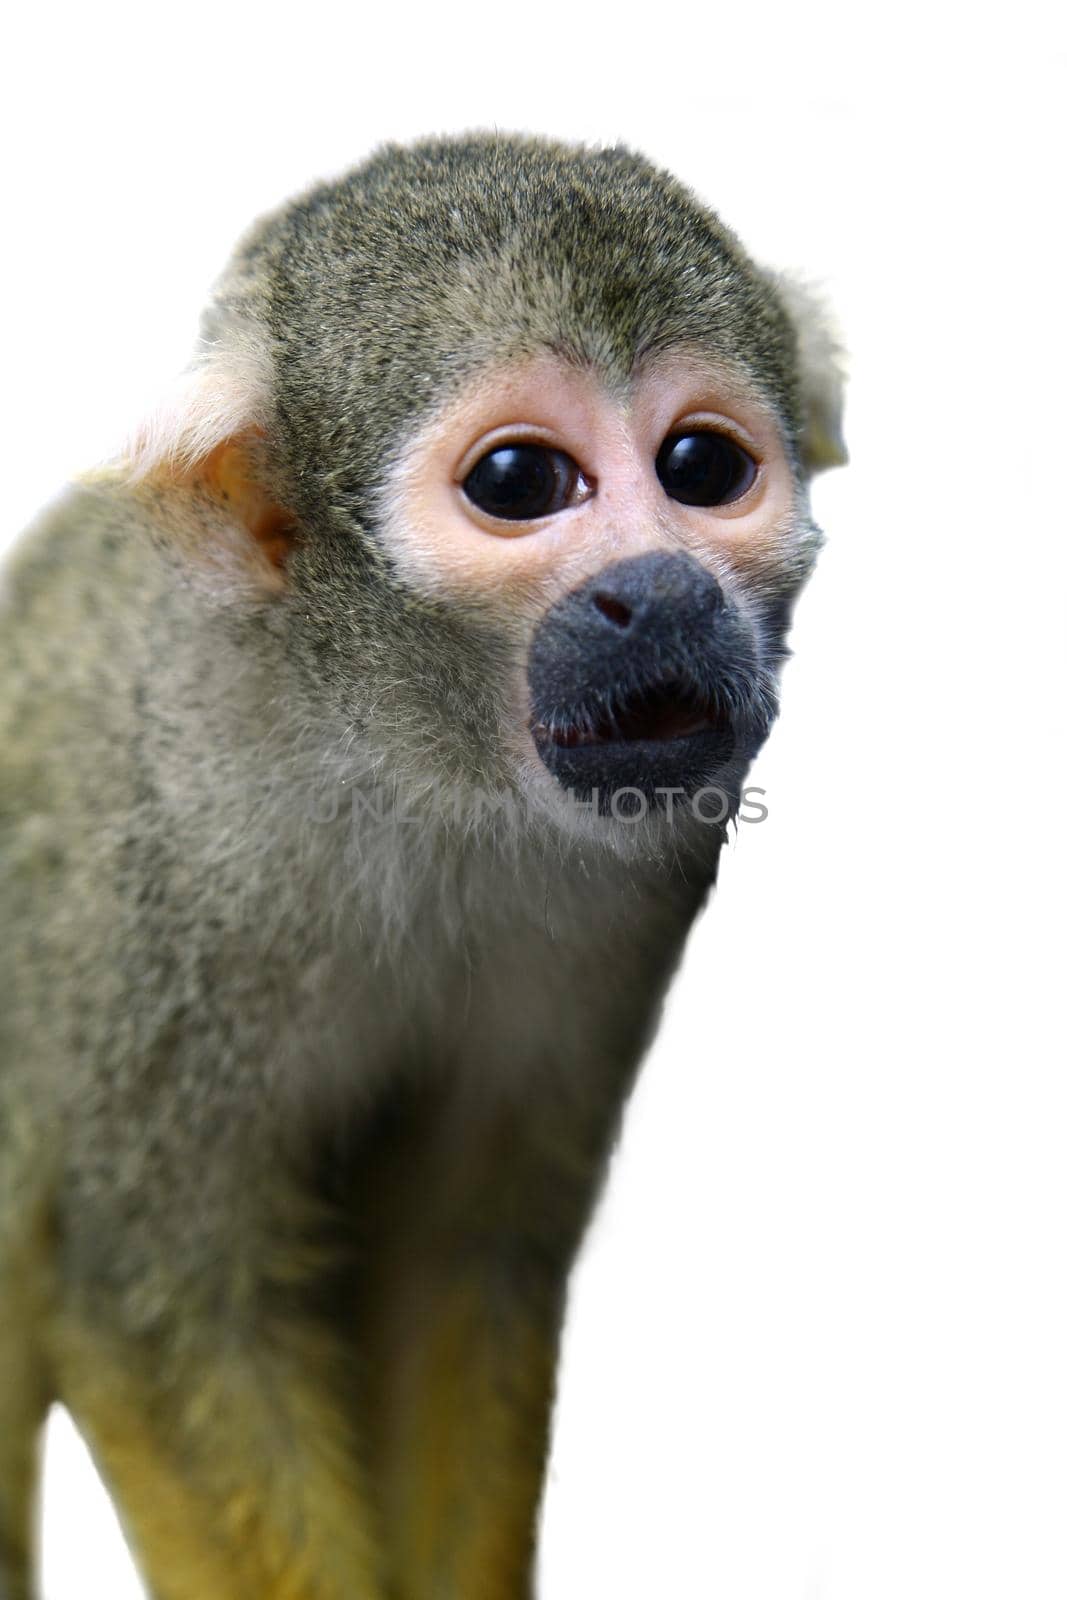 Common squirrel monkey, Saimiri sciureus, on white background